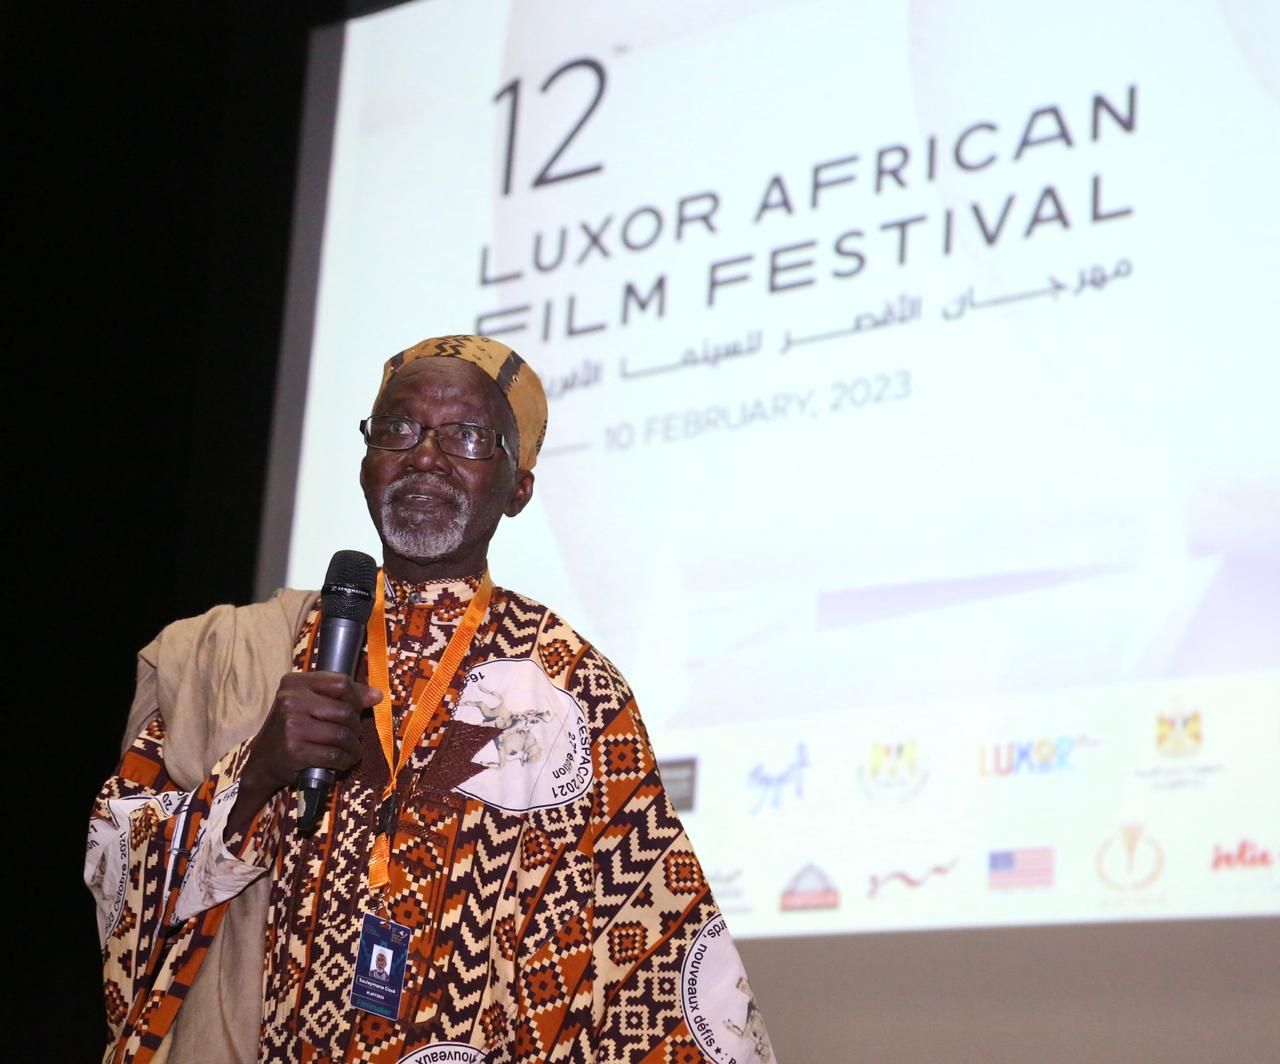 المخرج والمنتج المالي سليمان سيسيه سعيد بالحديث عني  في مهرجان الأقصر للسينما الأفريقية  (1)